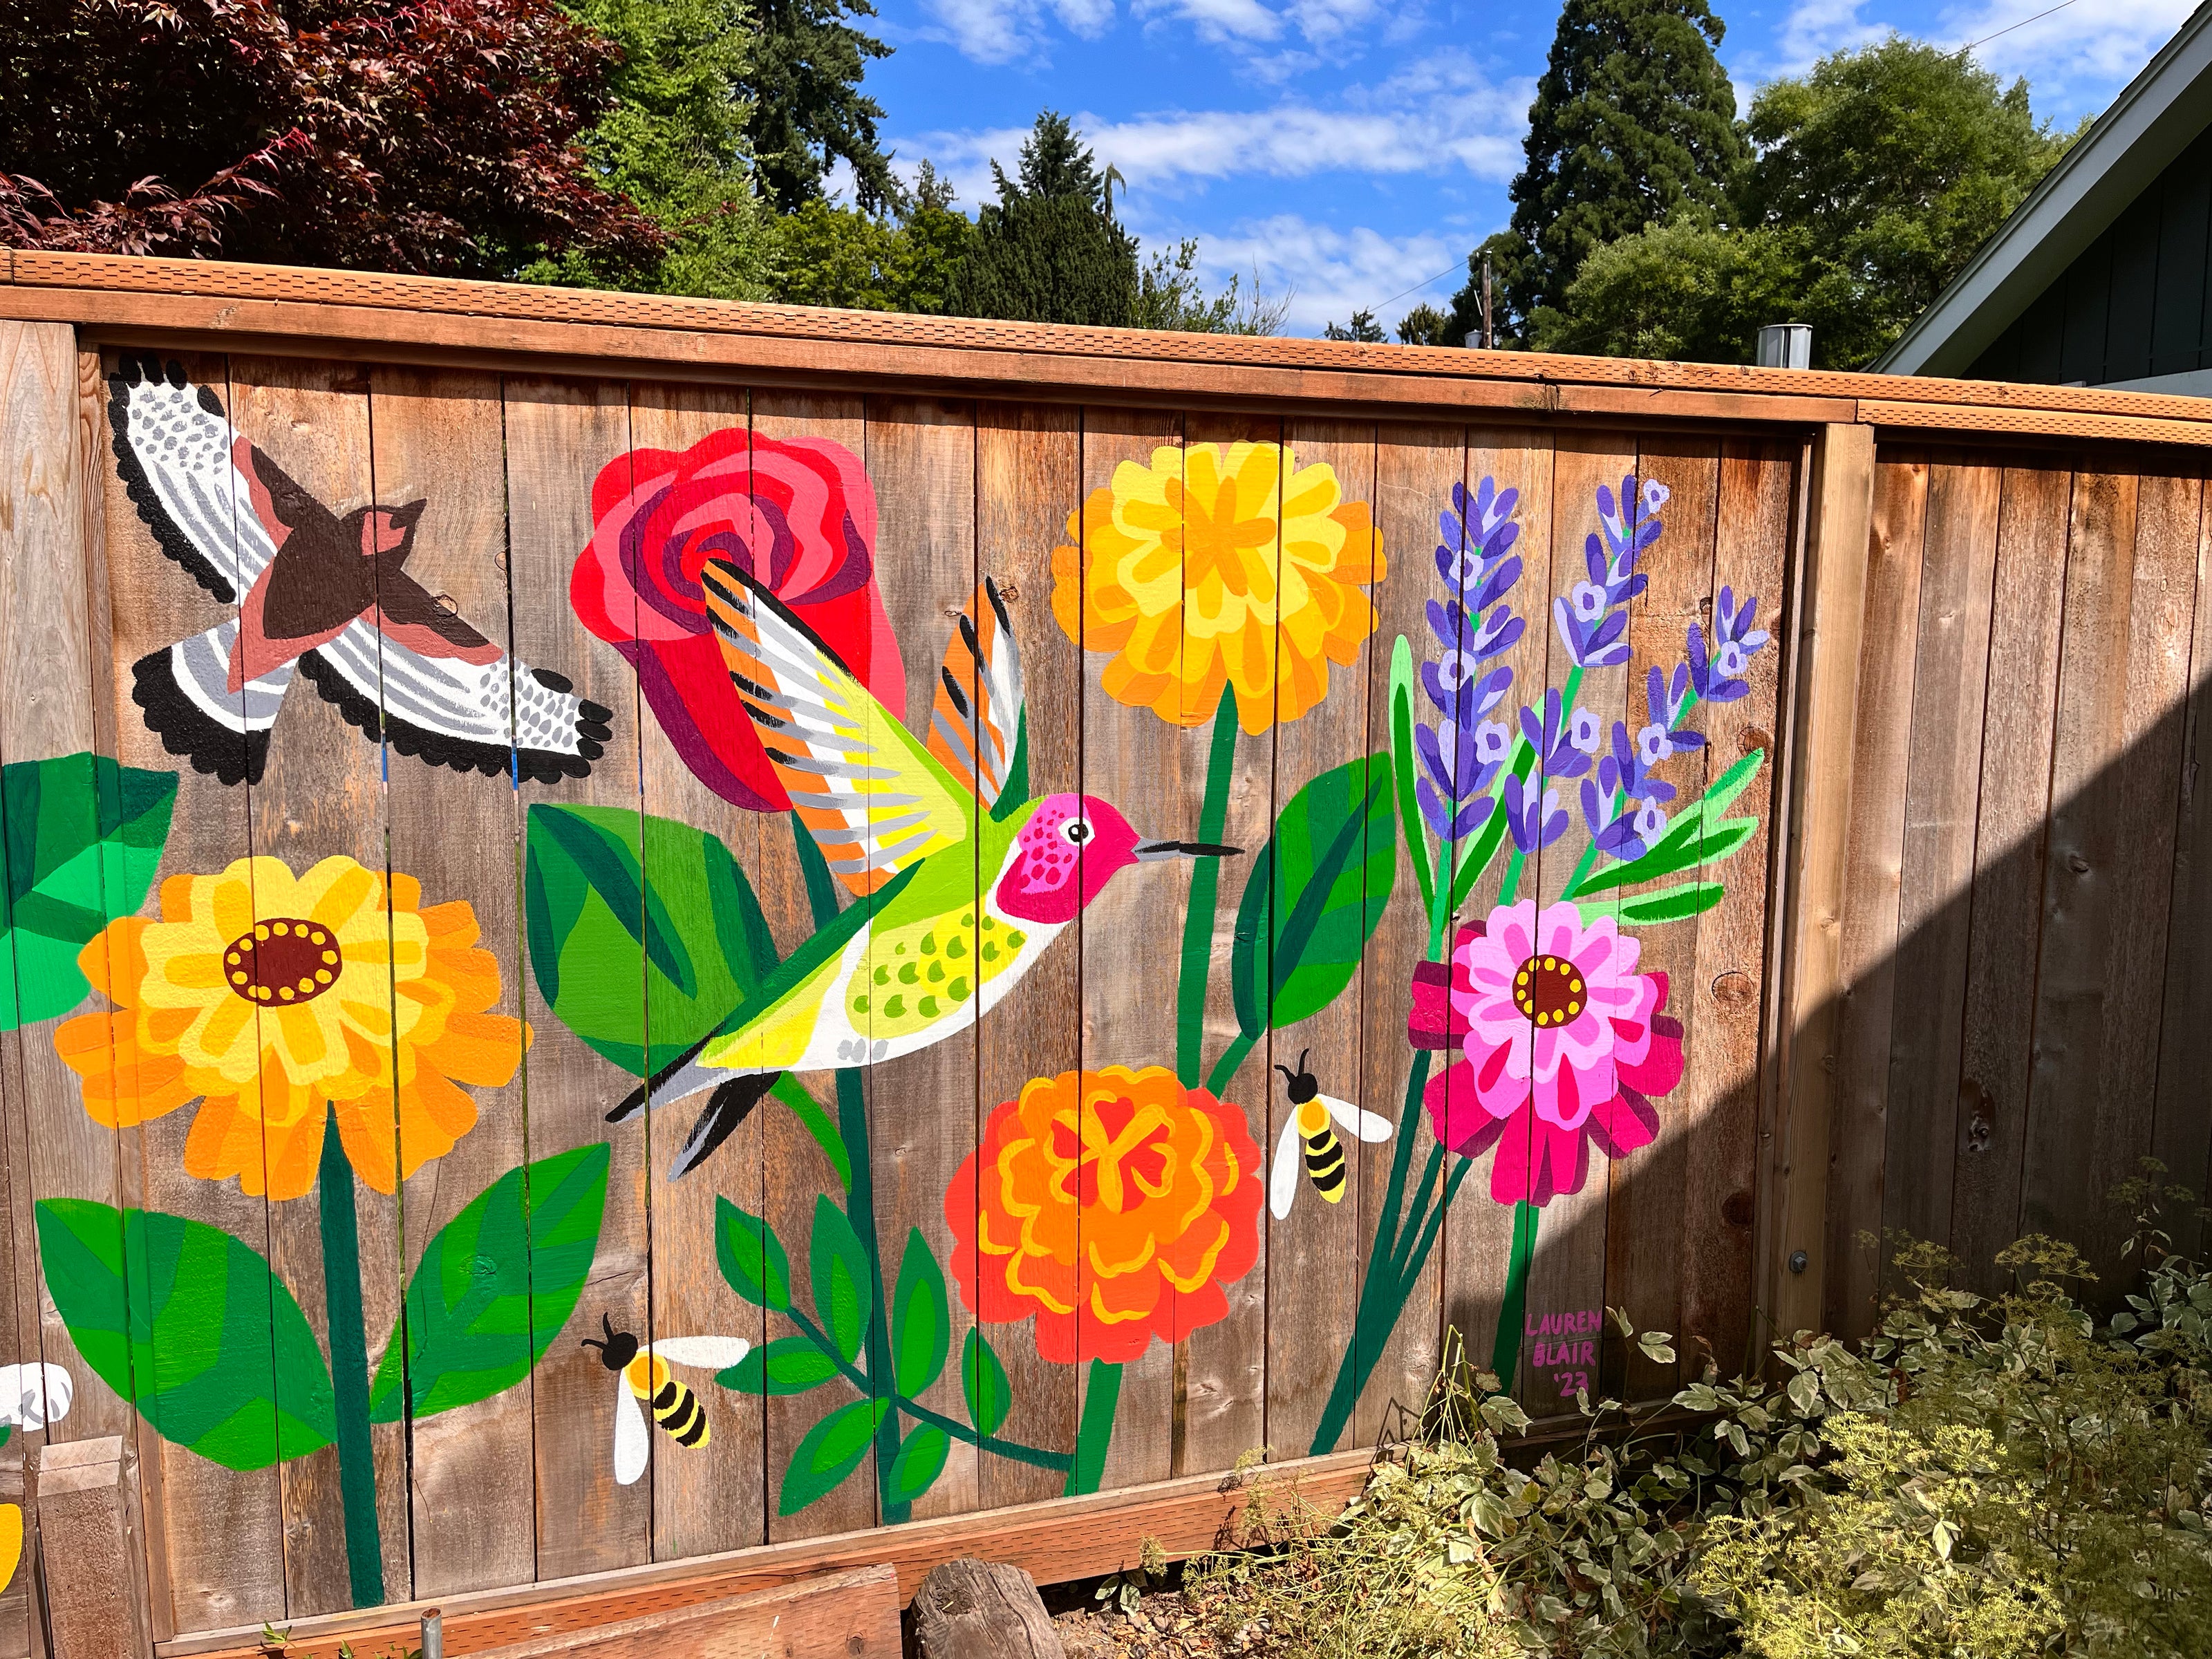 Mural of wildflowers, hummingbird, and honeybees